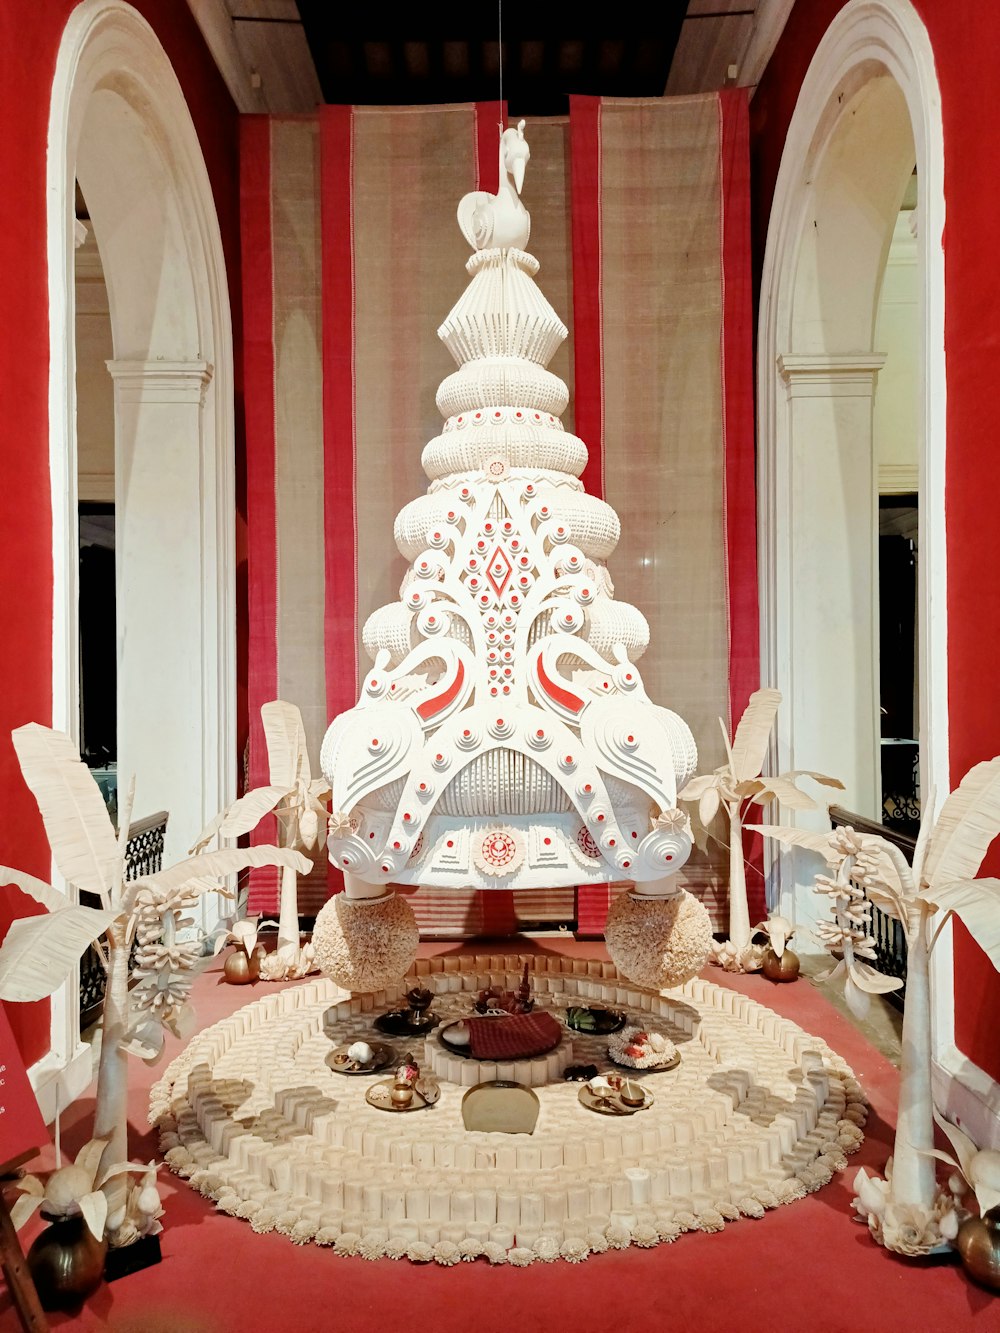 estatueta de elefante de cerâmica branca e vermelha